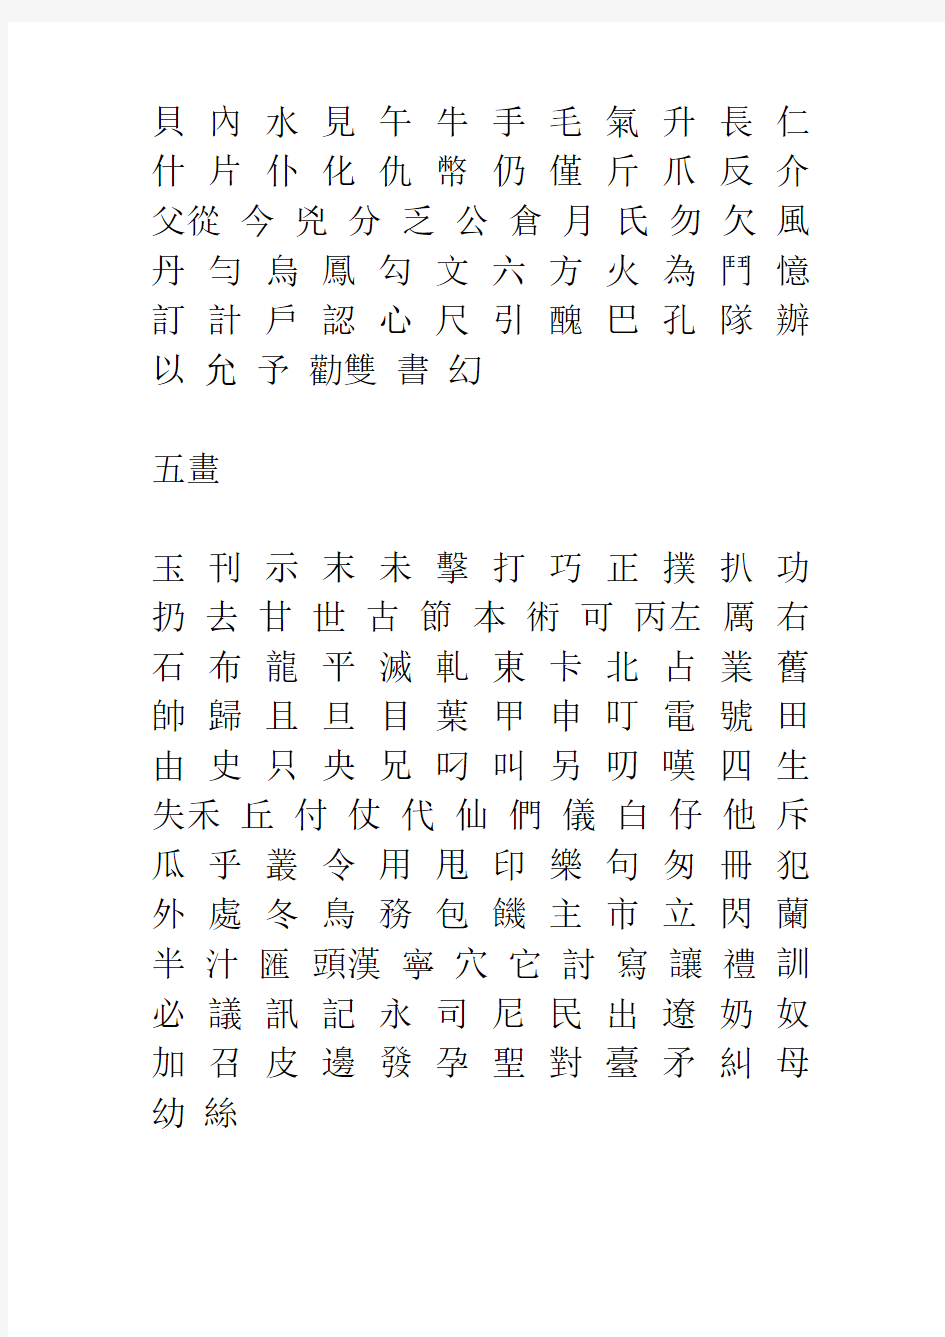 3500个常用汉字及繁体字表.